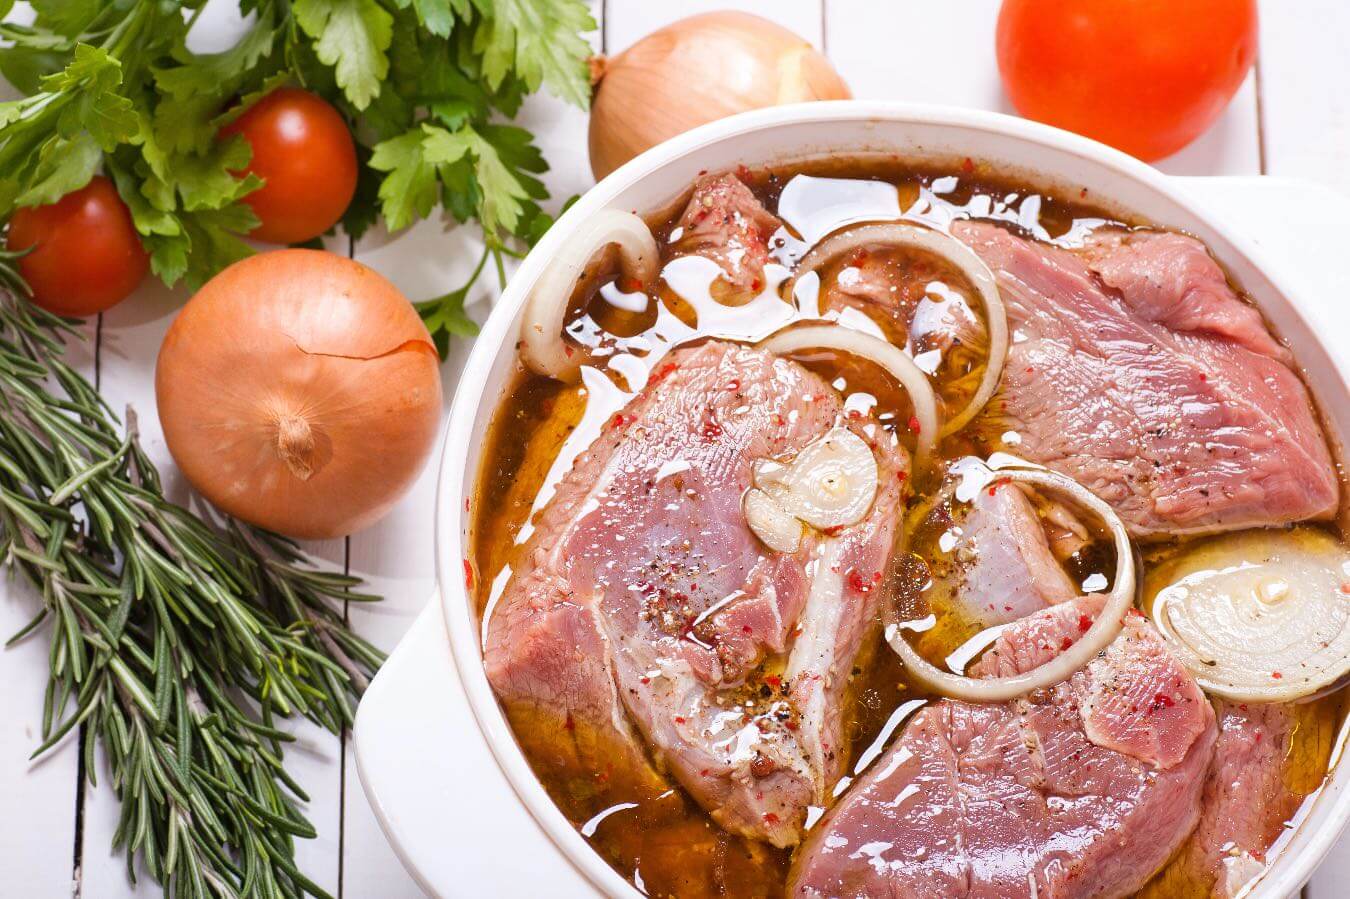 Ile może leżeć przyprawione mięso w lodówce? Niewłaściwe przechowywanie może być niebezpieczne dla zdrowia